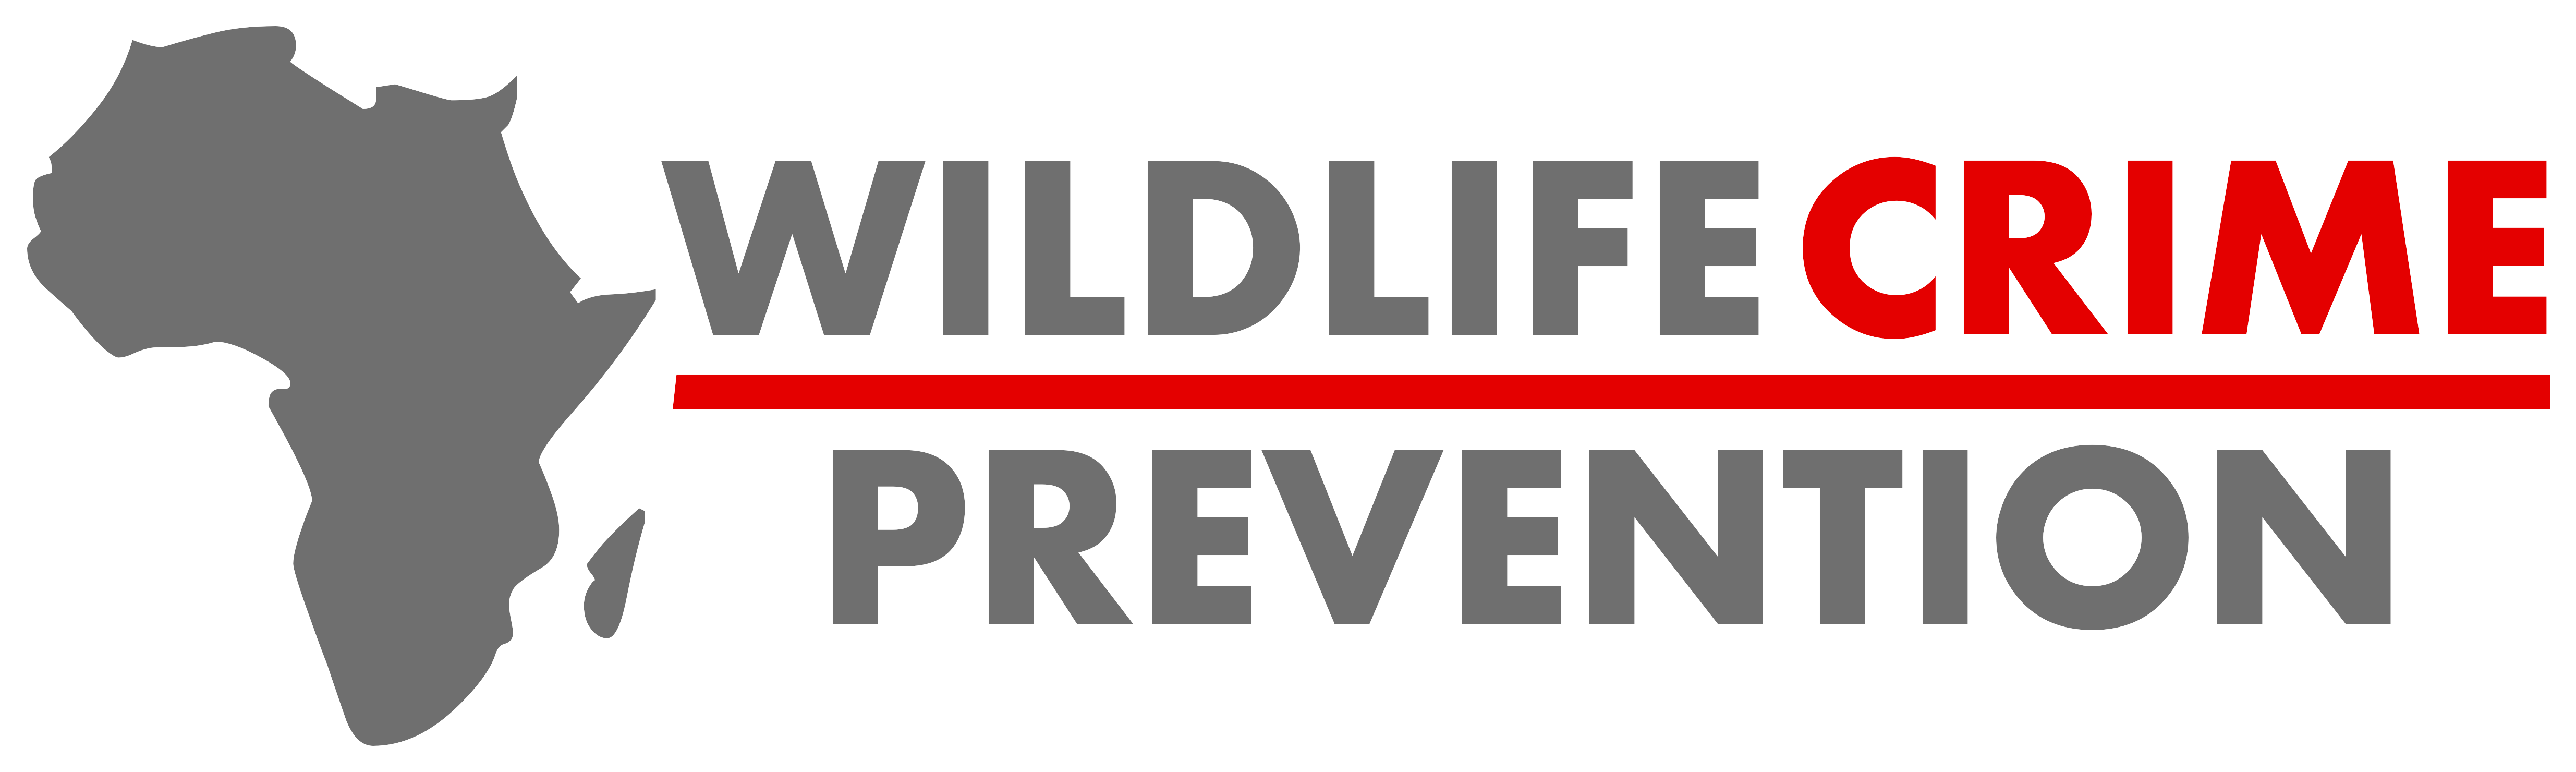 Wildlife Crime Prevention